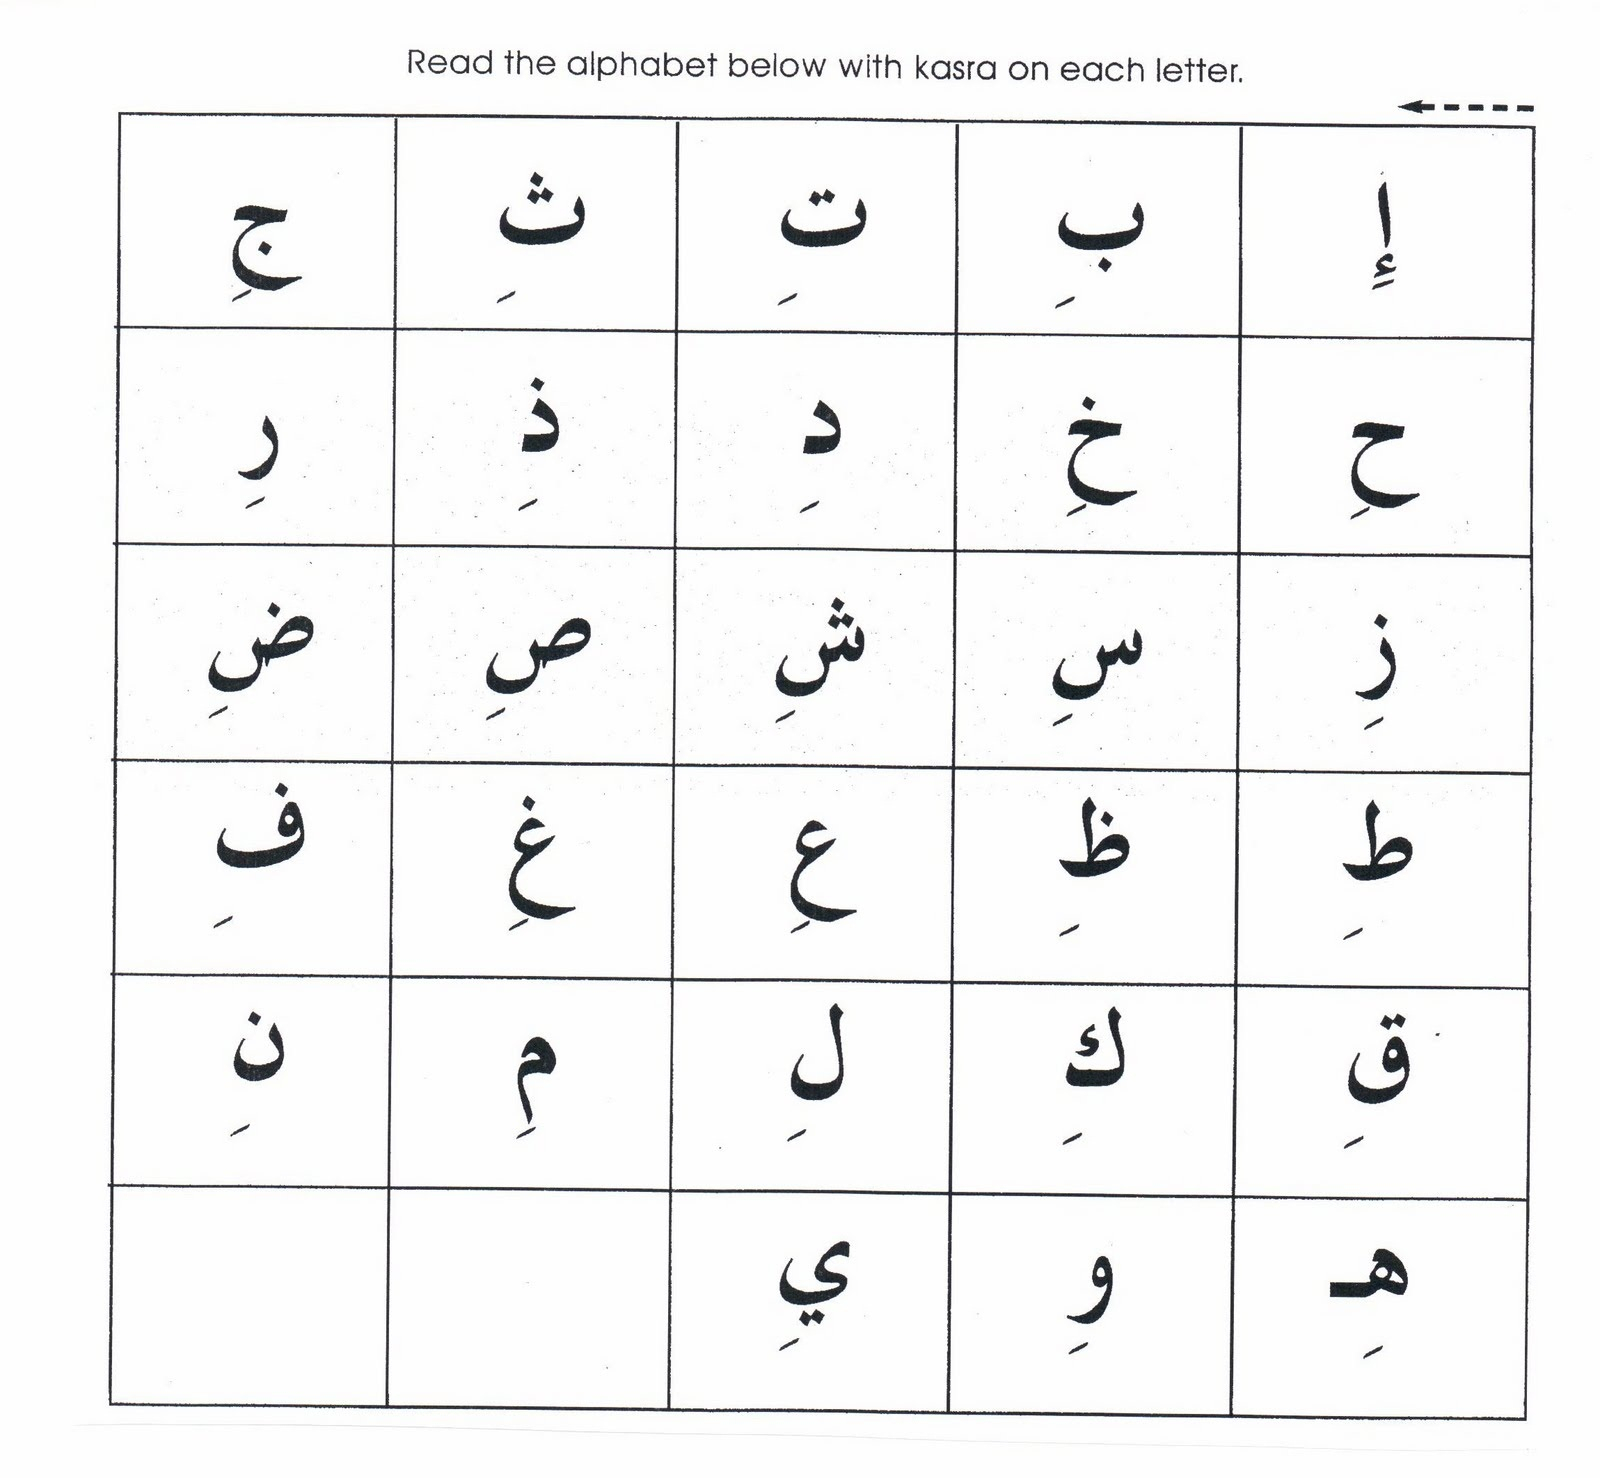 Printable Urdu Worksheets For Kindergarten Free Alif Ta regarding Urdu Letters Tracing Worksheets